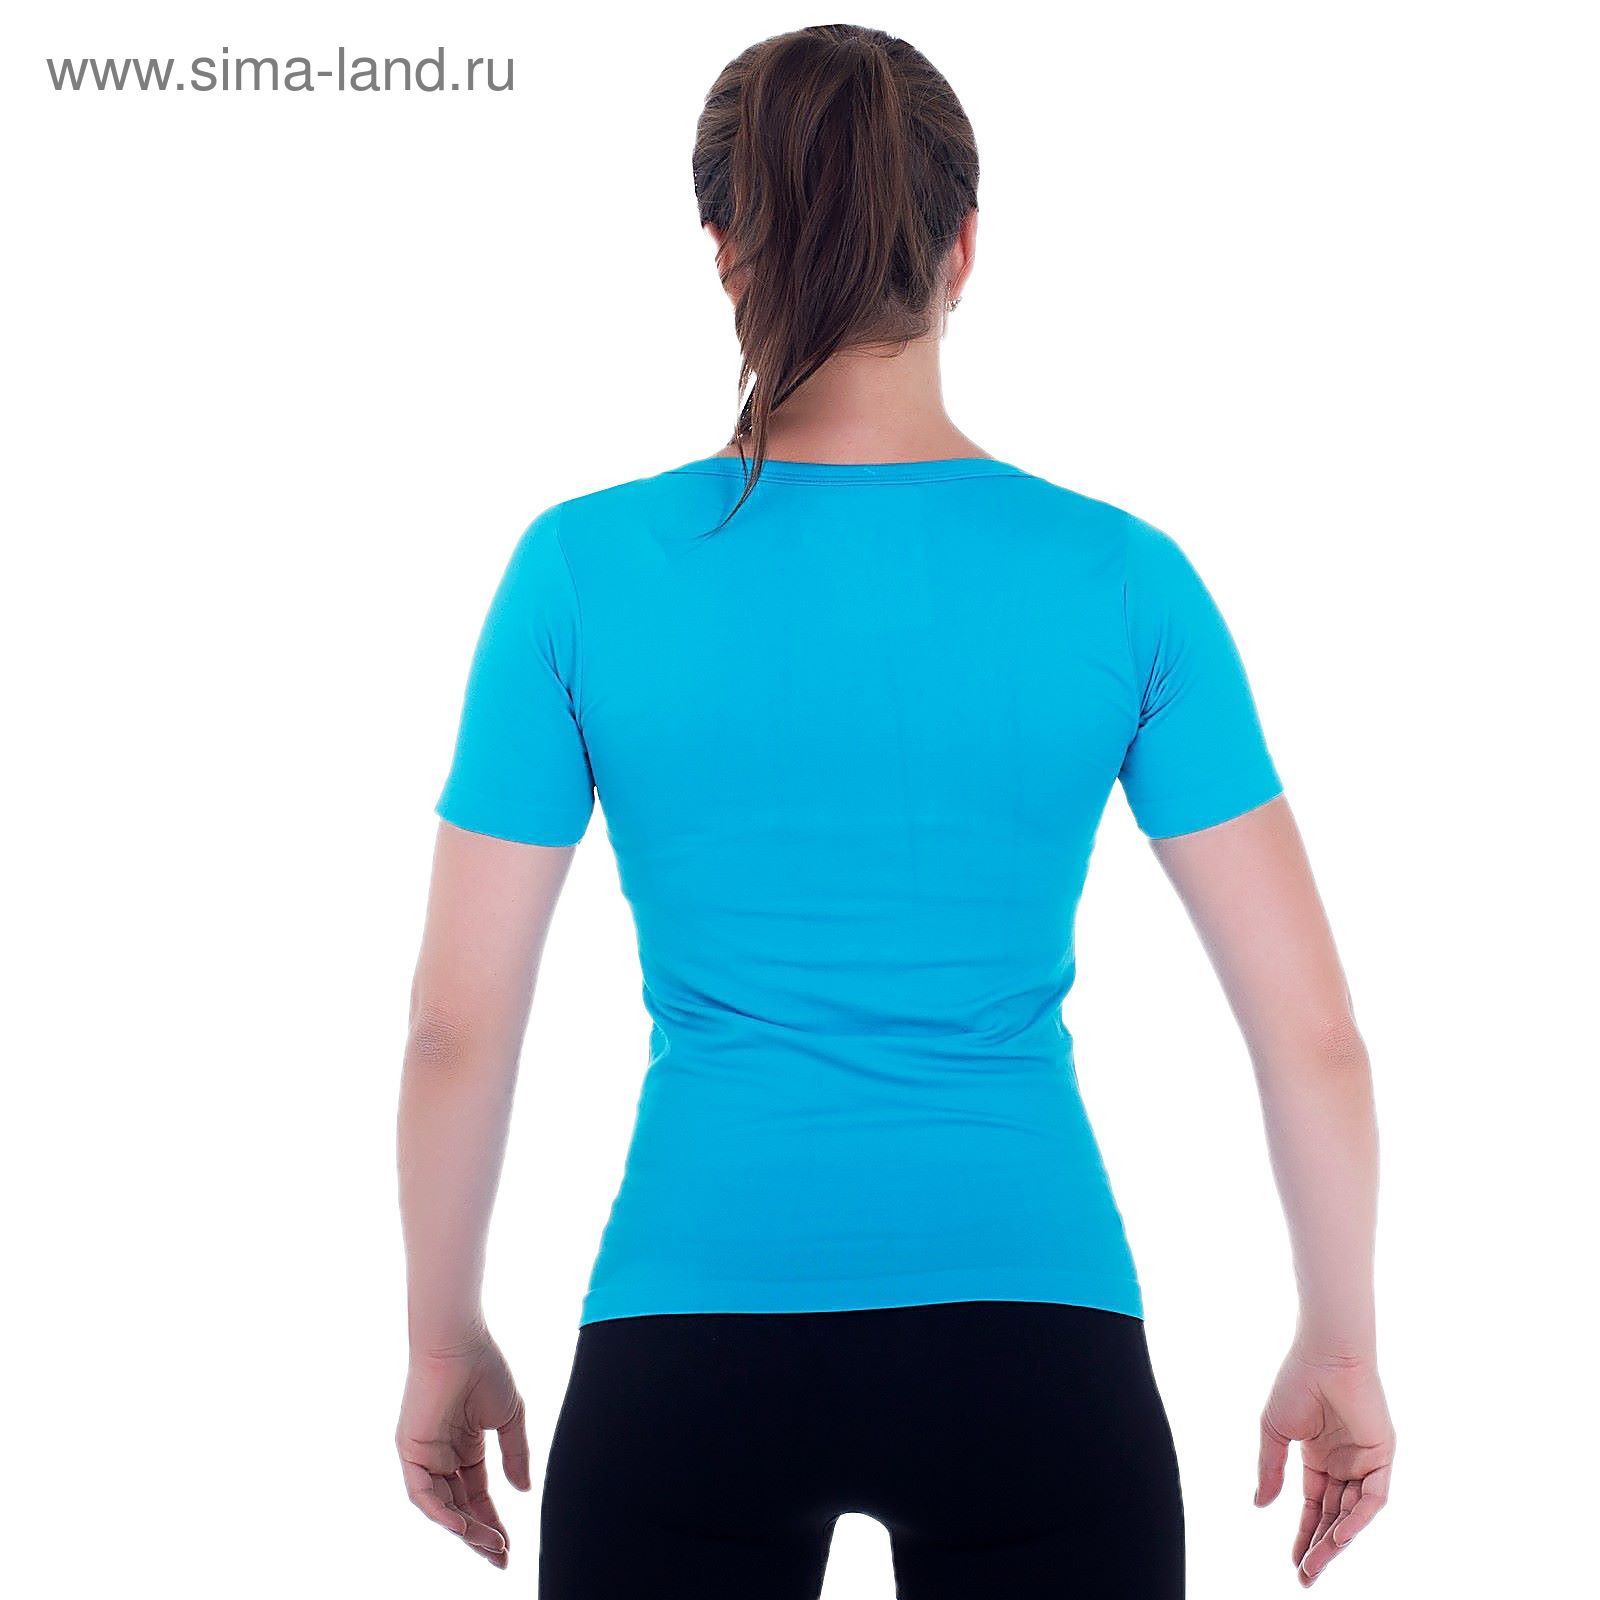 Спортивная футболка ONLITOP Balance blue, размер S-M (42-44)